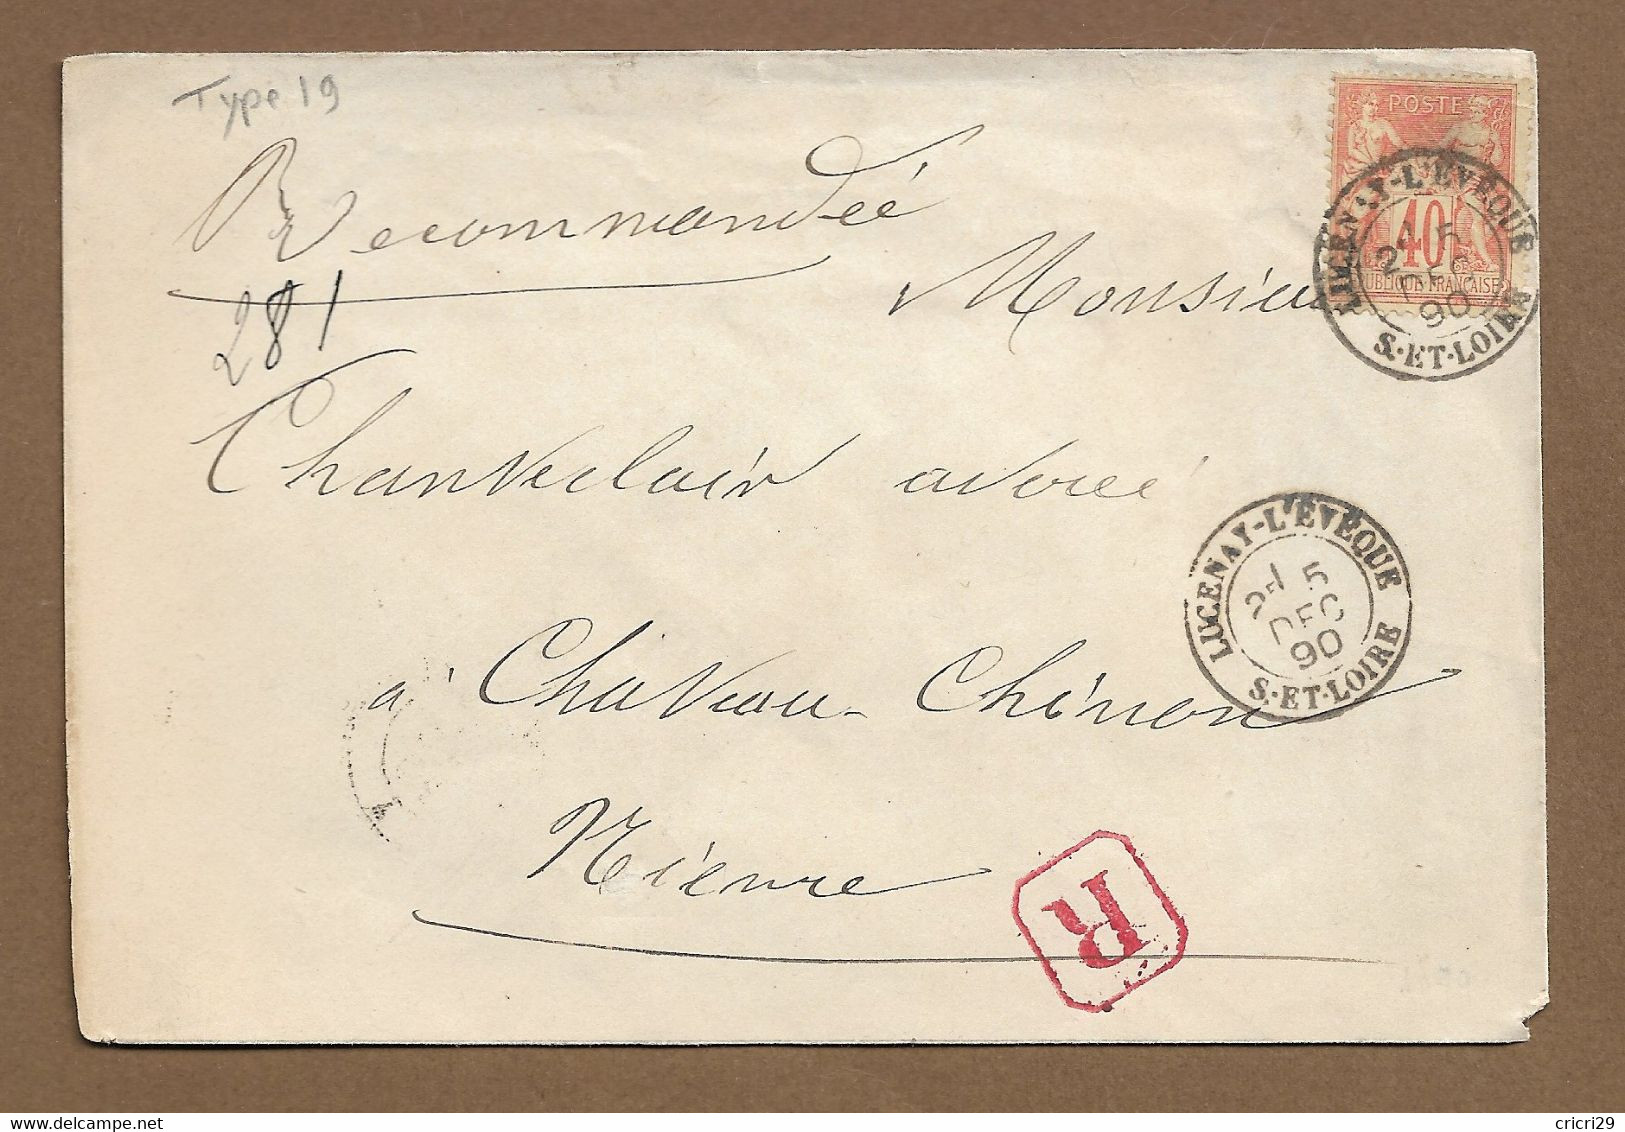 LUCENAY  L'EVEQUE  : 1890 :  Cachet à Date  Type 19,  Sur Sage 40c , Sur Lettre Recommandée  :  ( Saône Et Loire ) : - 1877-1920: Semi-Moderne